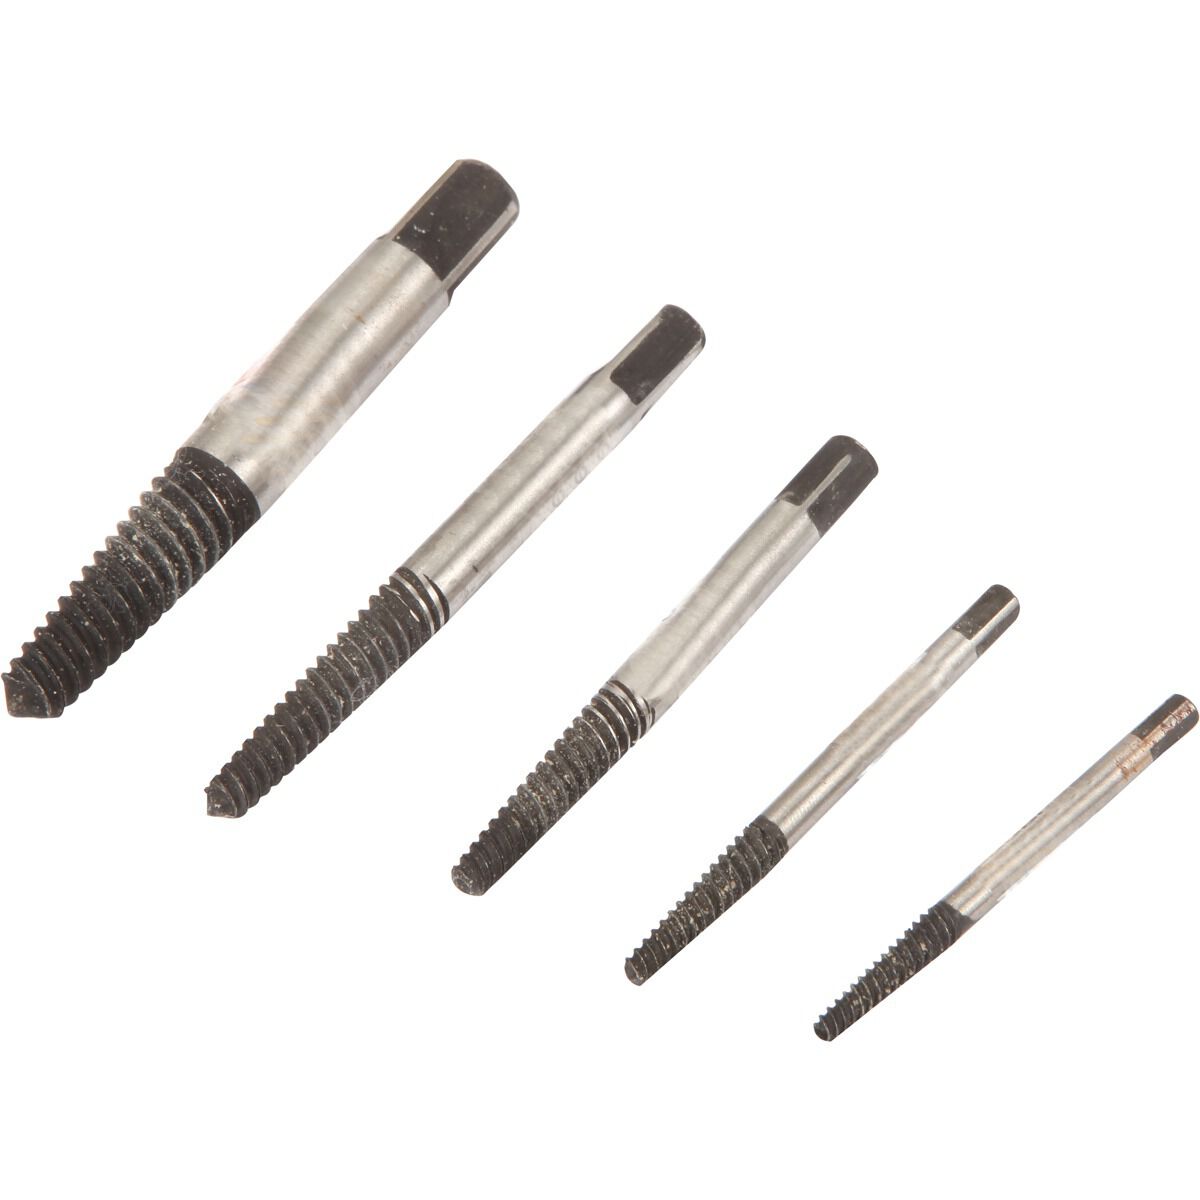 small screw extractor